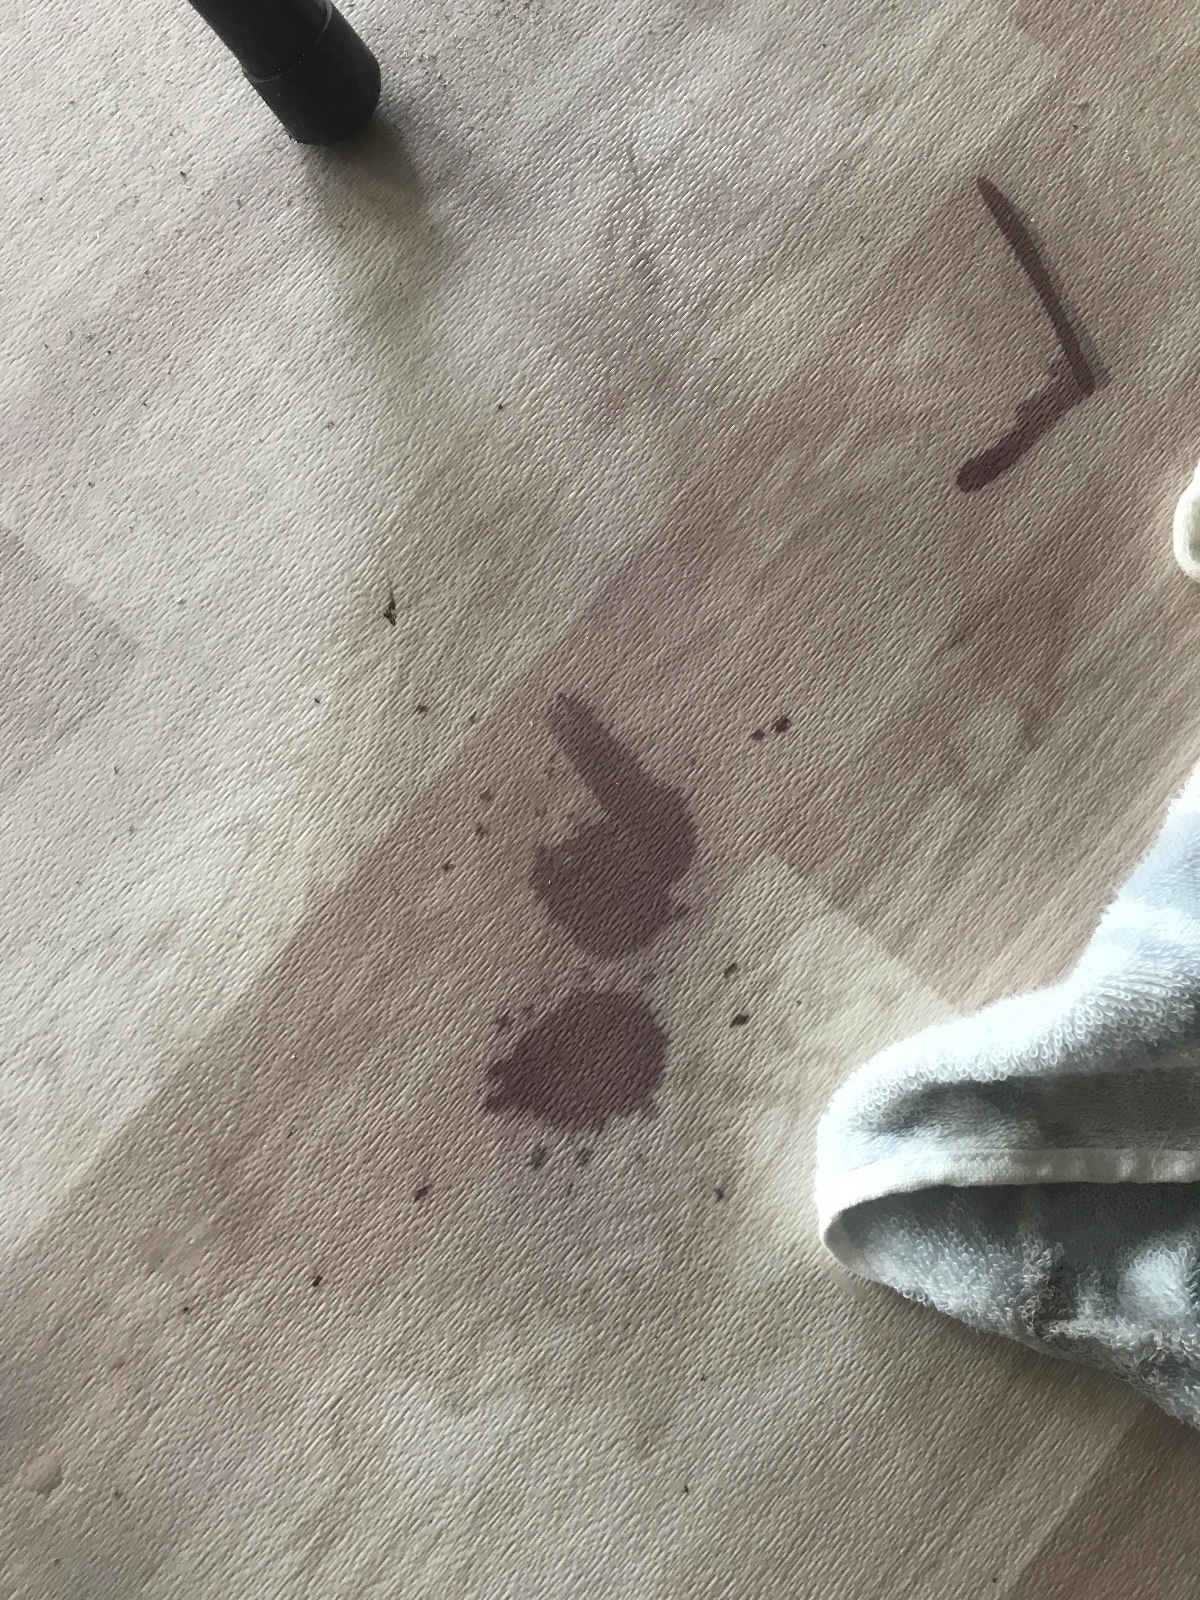 橡胶地毯上弄上油漆怎么处理